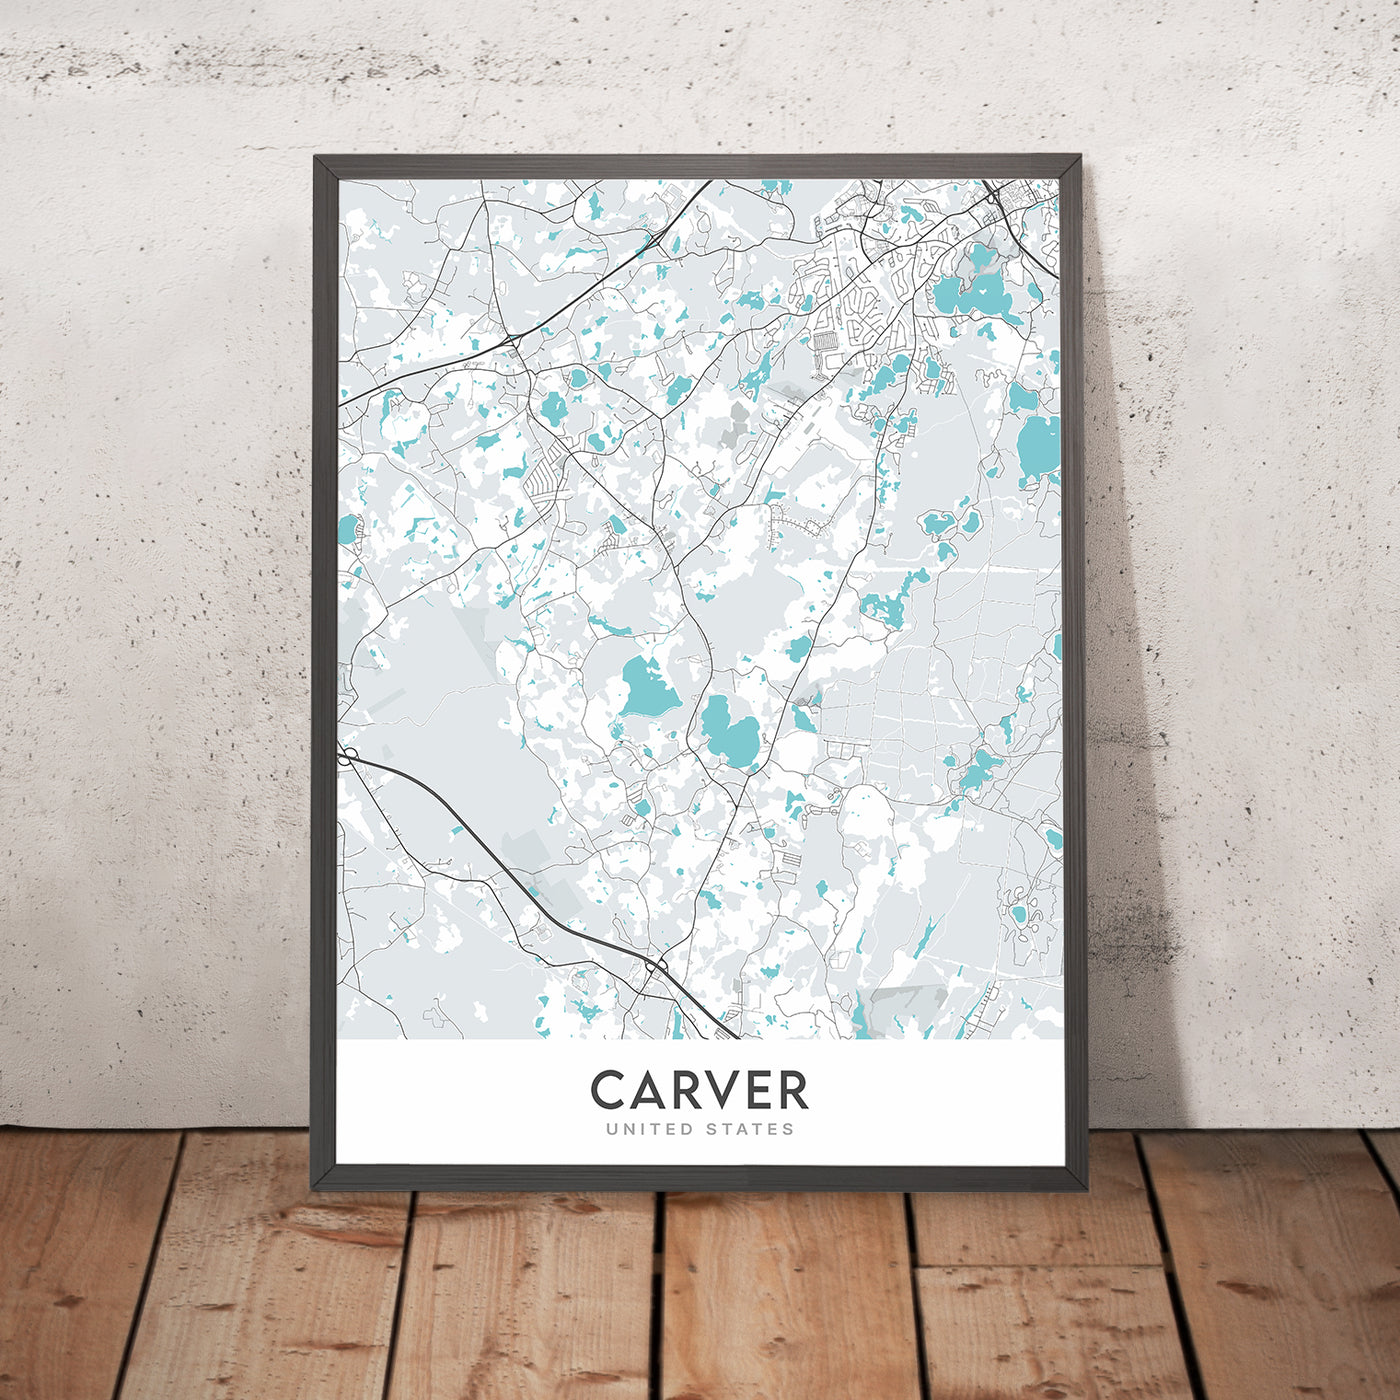 Mapa moderno de la ciudad de Carver, MA: Carver Center, Carver Town Hall, MA-58, MA-36, County Road